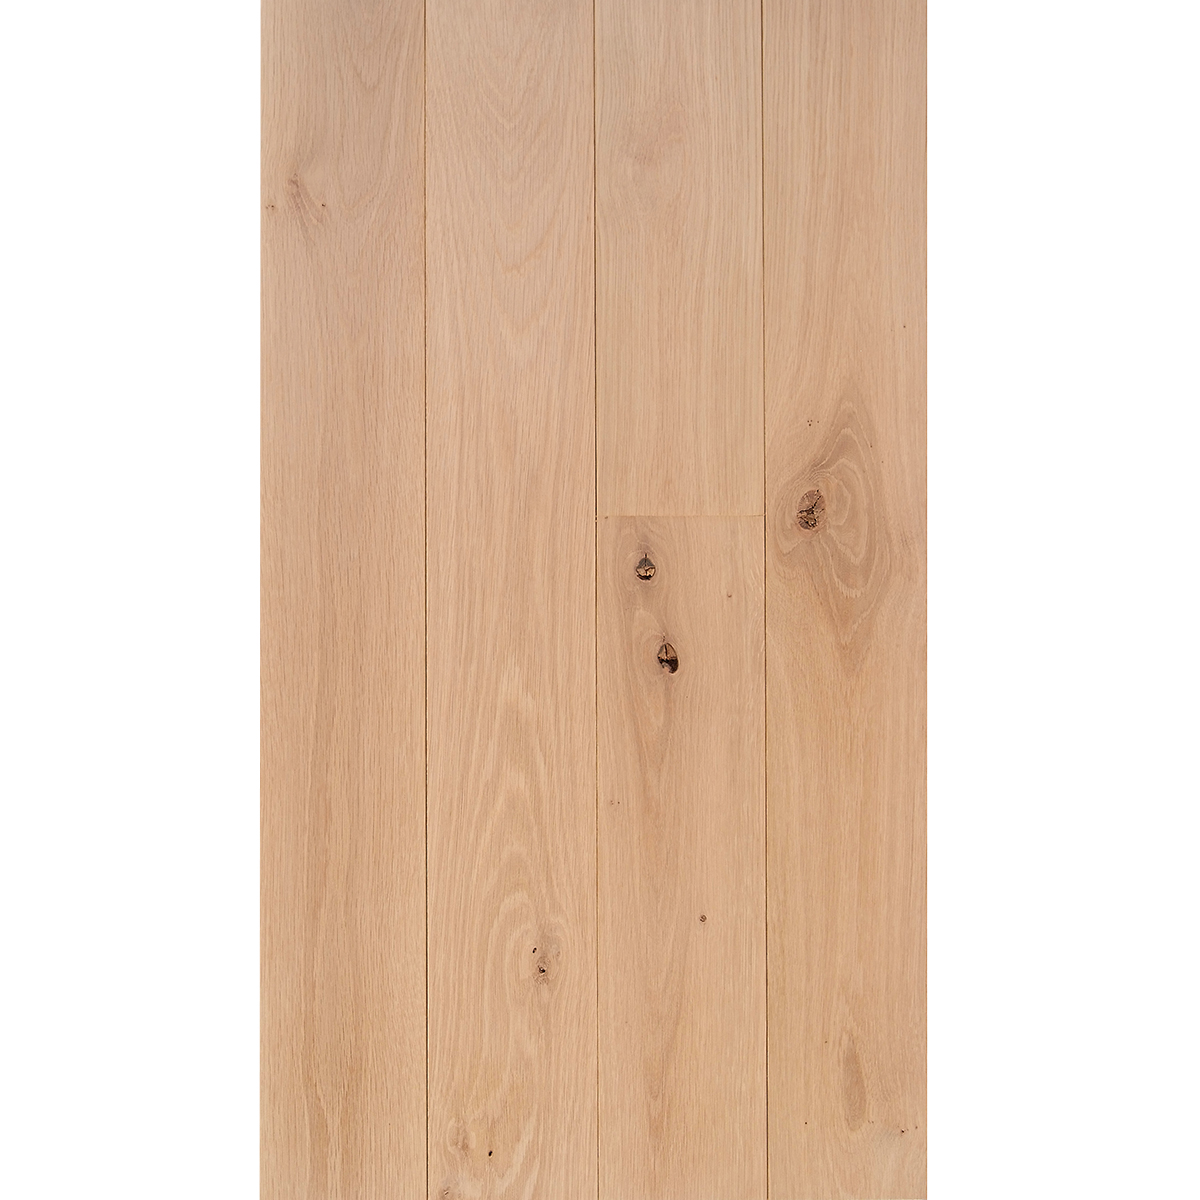 White Oak 3 4 X 5 Character Grade, 5 Inch White Oak Hardwood Flooring